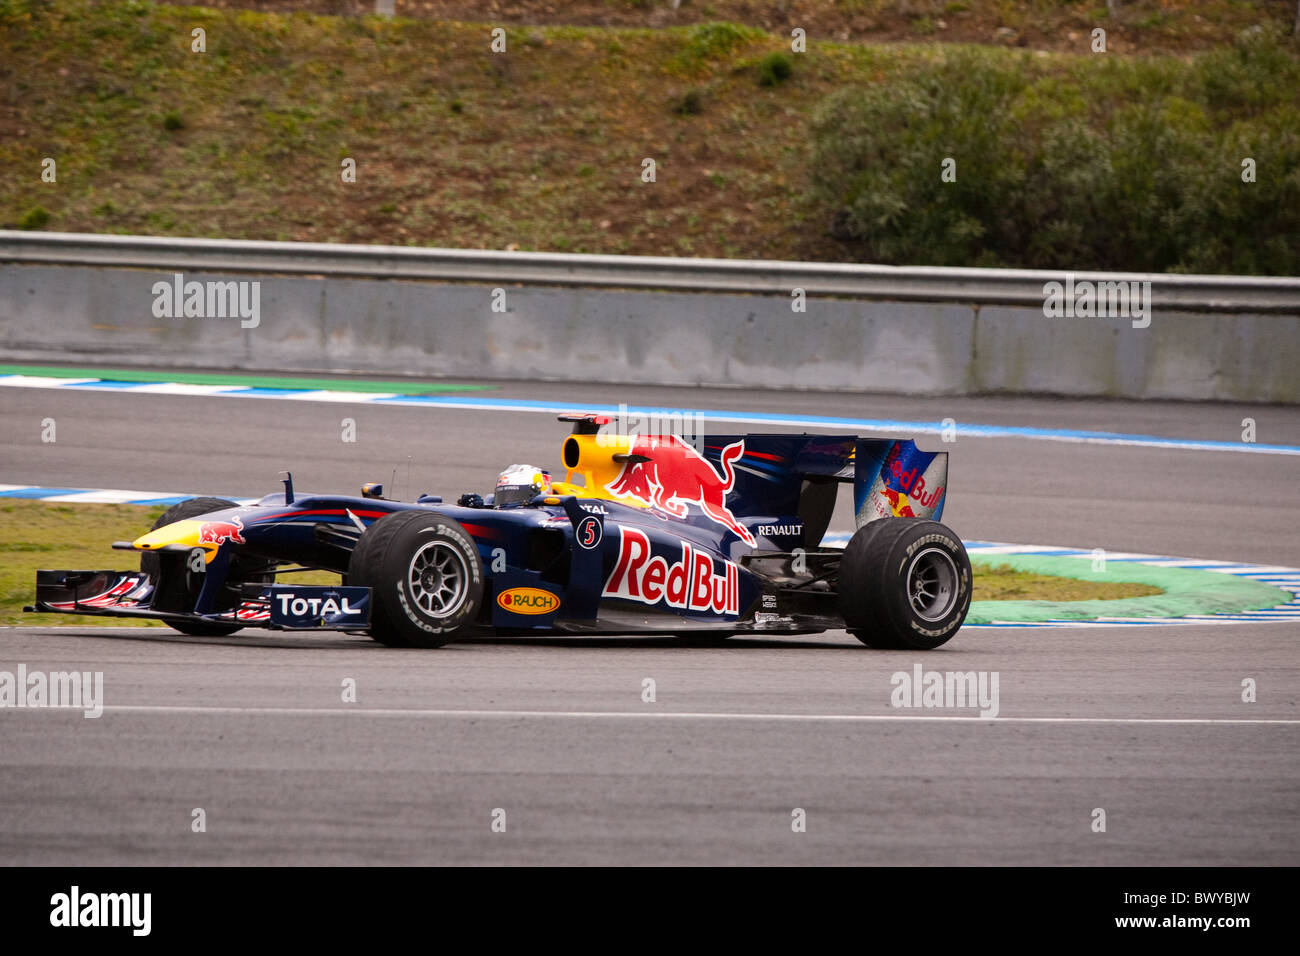 13.02.2010, Formel 1, Jerez, Red Bull, S. Vettel, test, nass Stockfoto